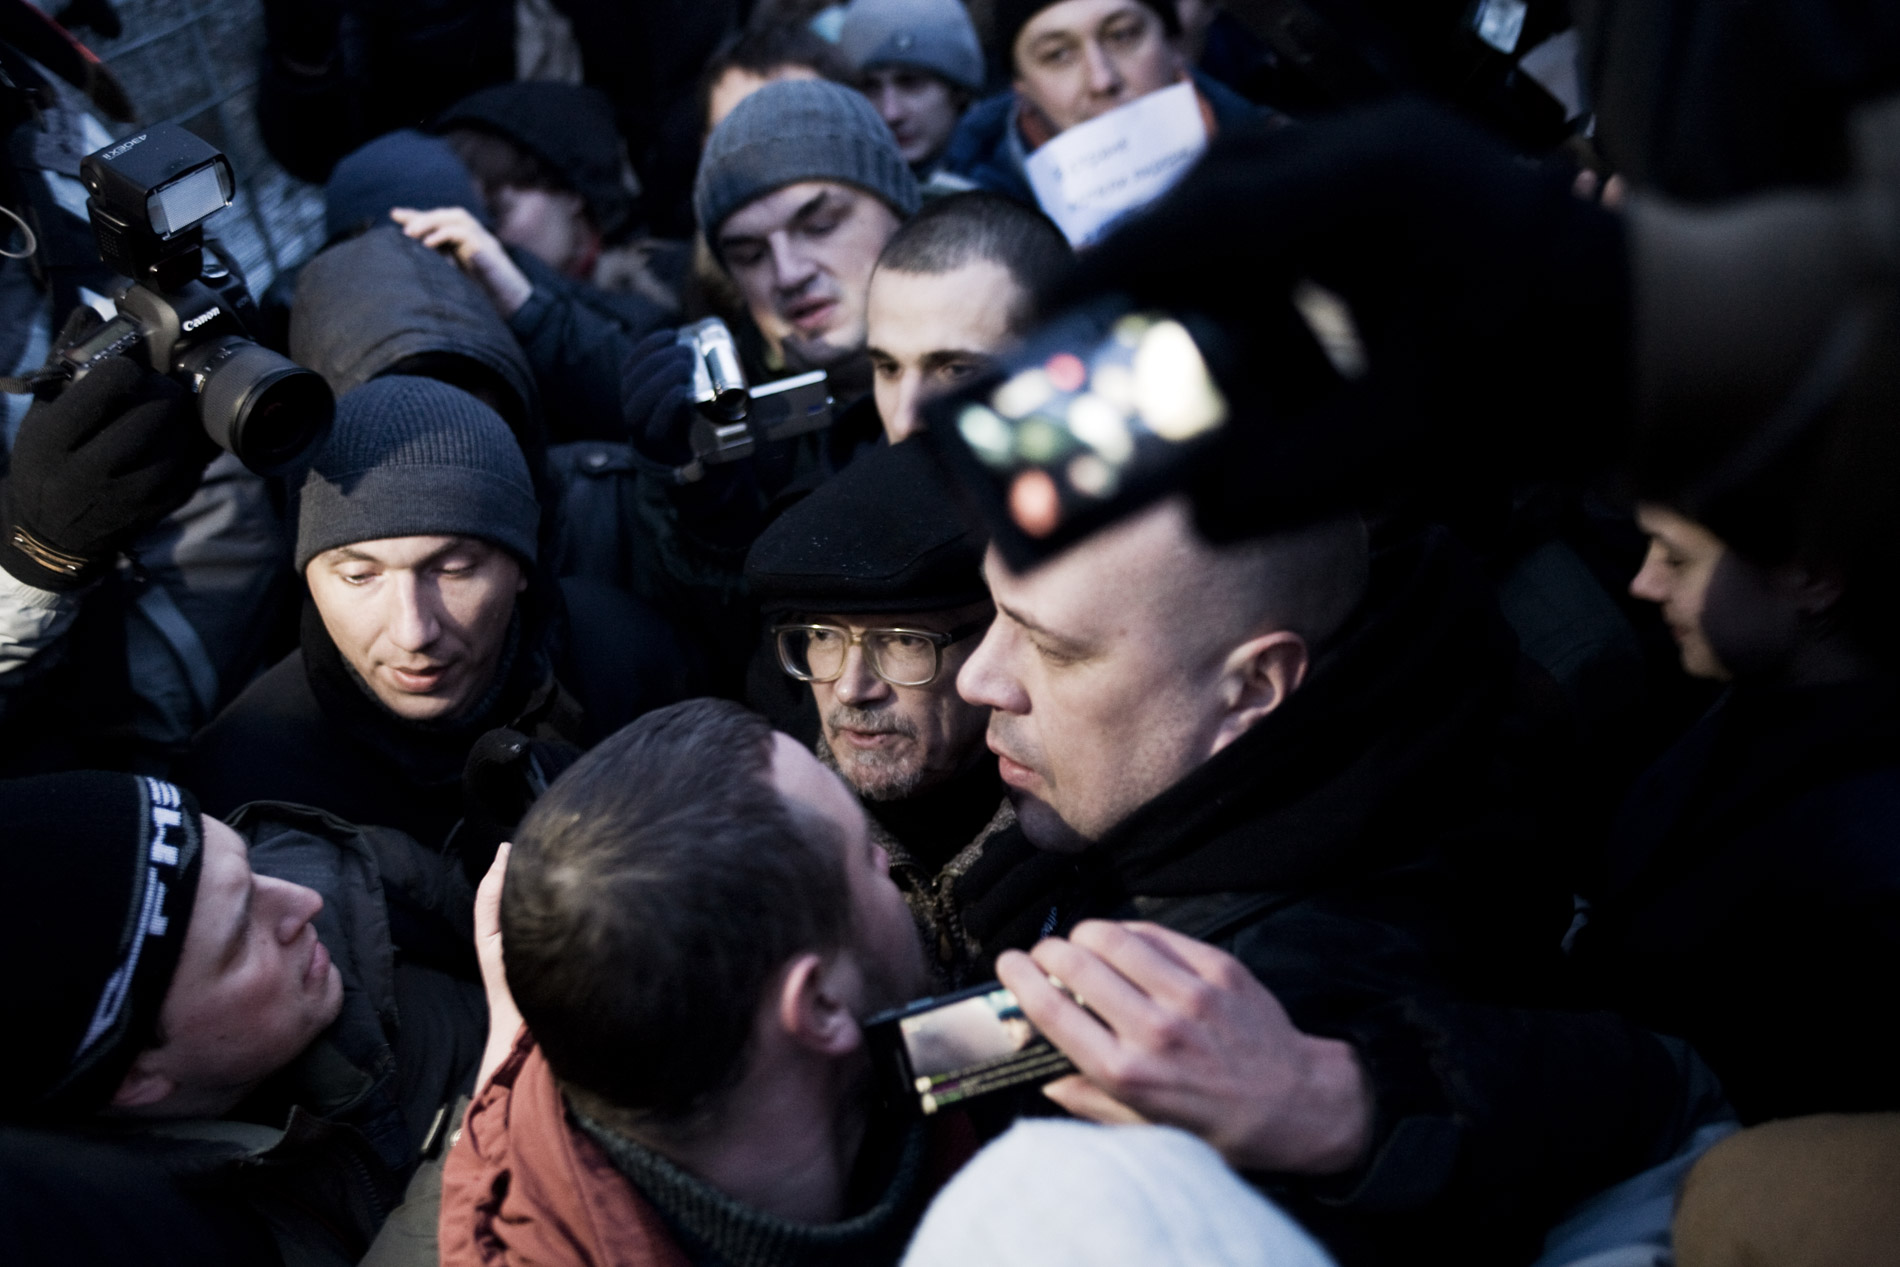 Edouard Limonov, avant son arrestation à Moscou - Edouard Limonov before his arrest in Moscow - march 5th 2012